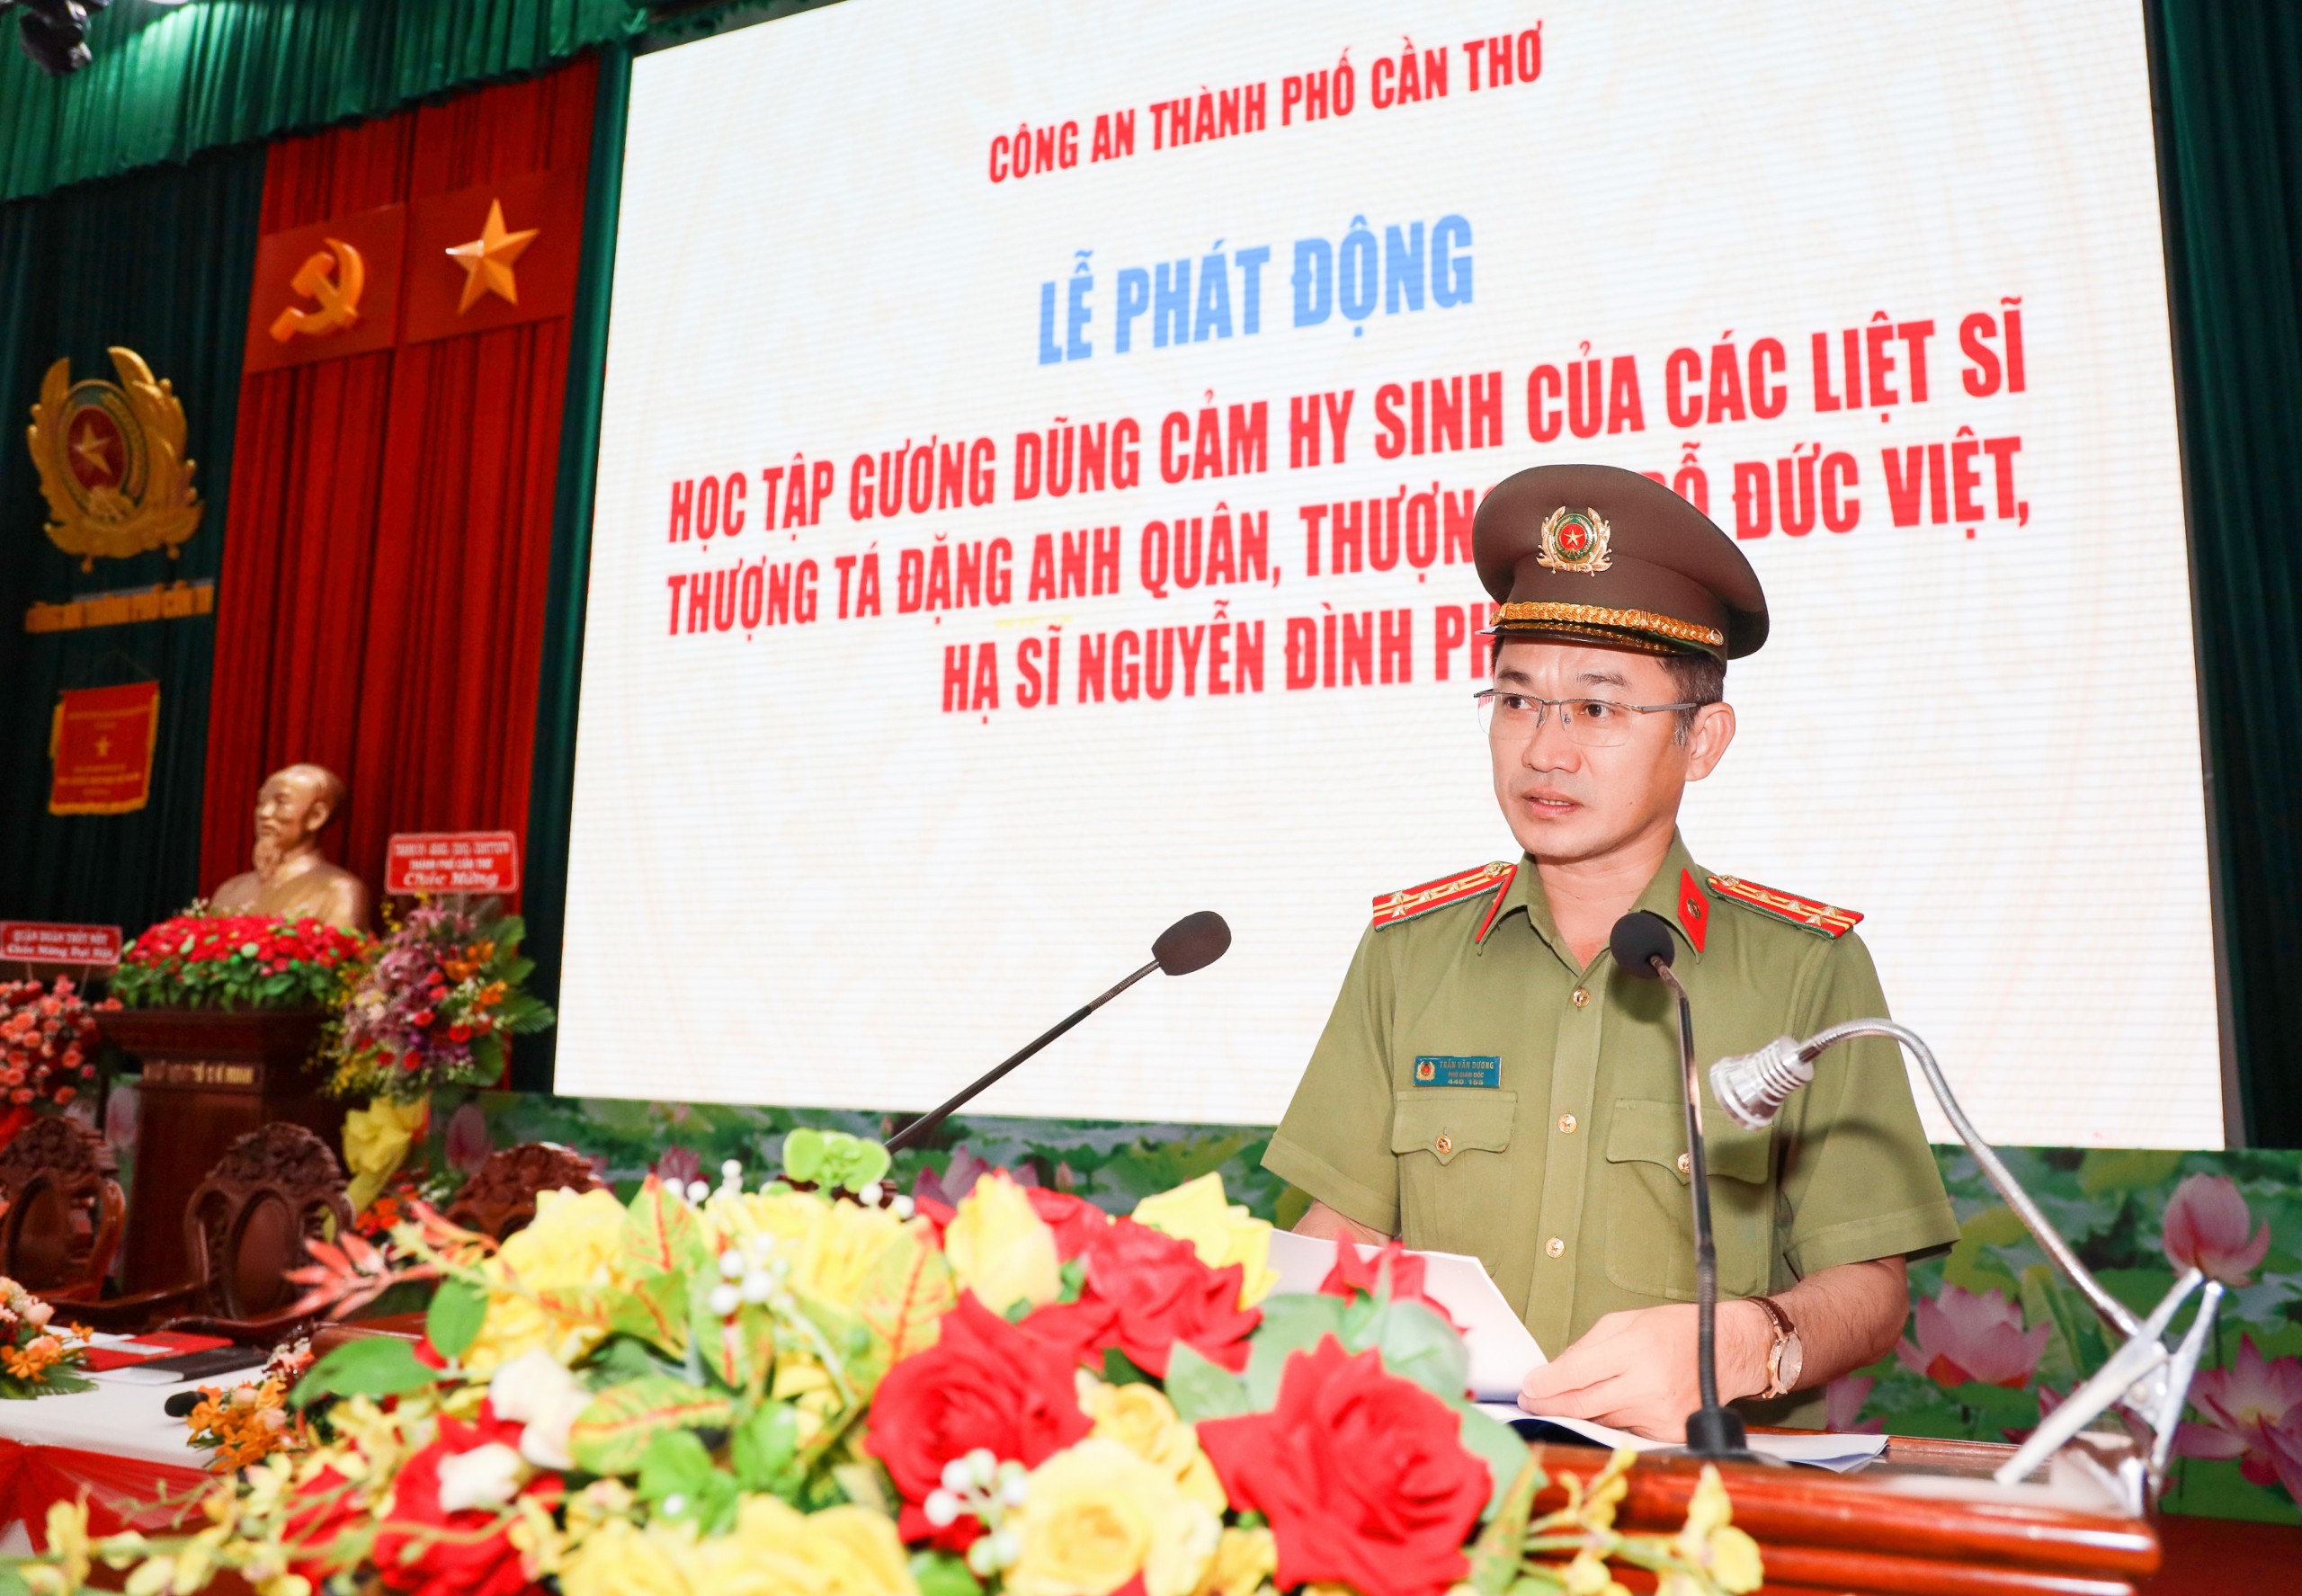 Đại tá Trần Văn Dương - Phó Giám đốc Công an TP. Cần Thơ phát biểu chỉ đạo tại buổi lễ.